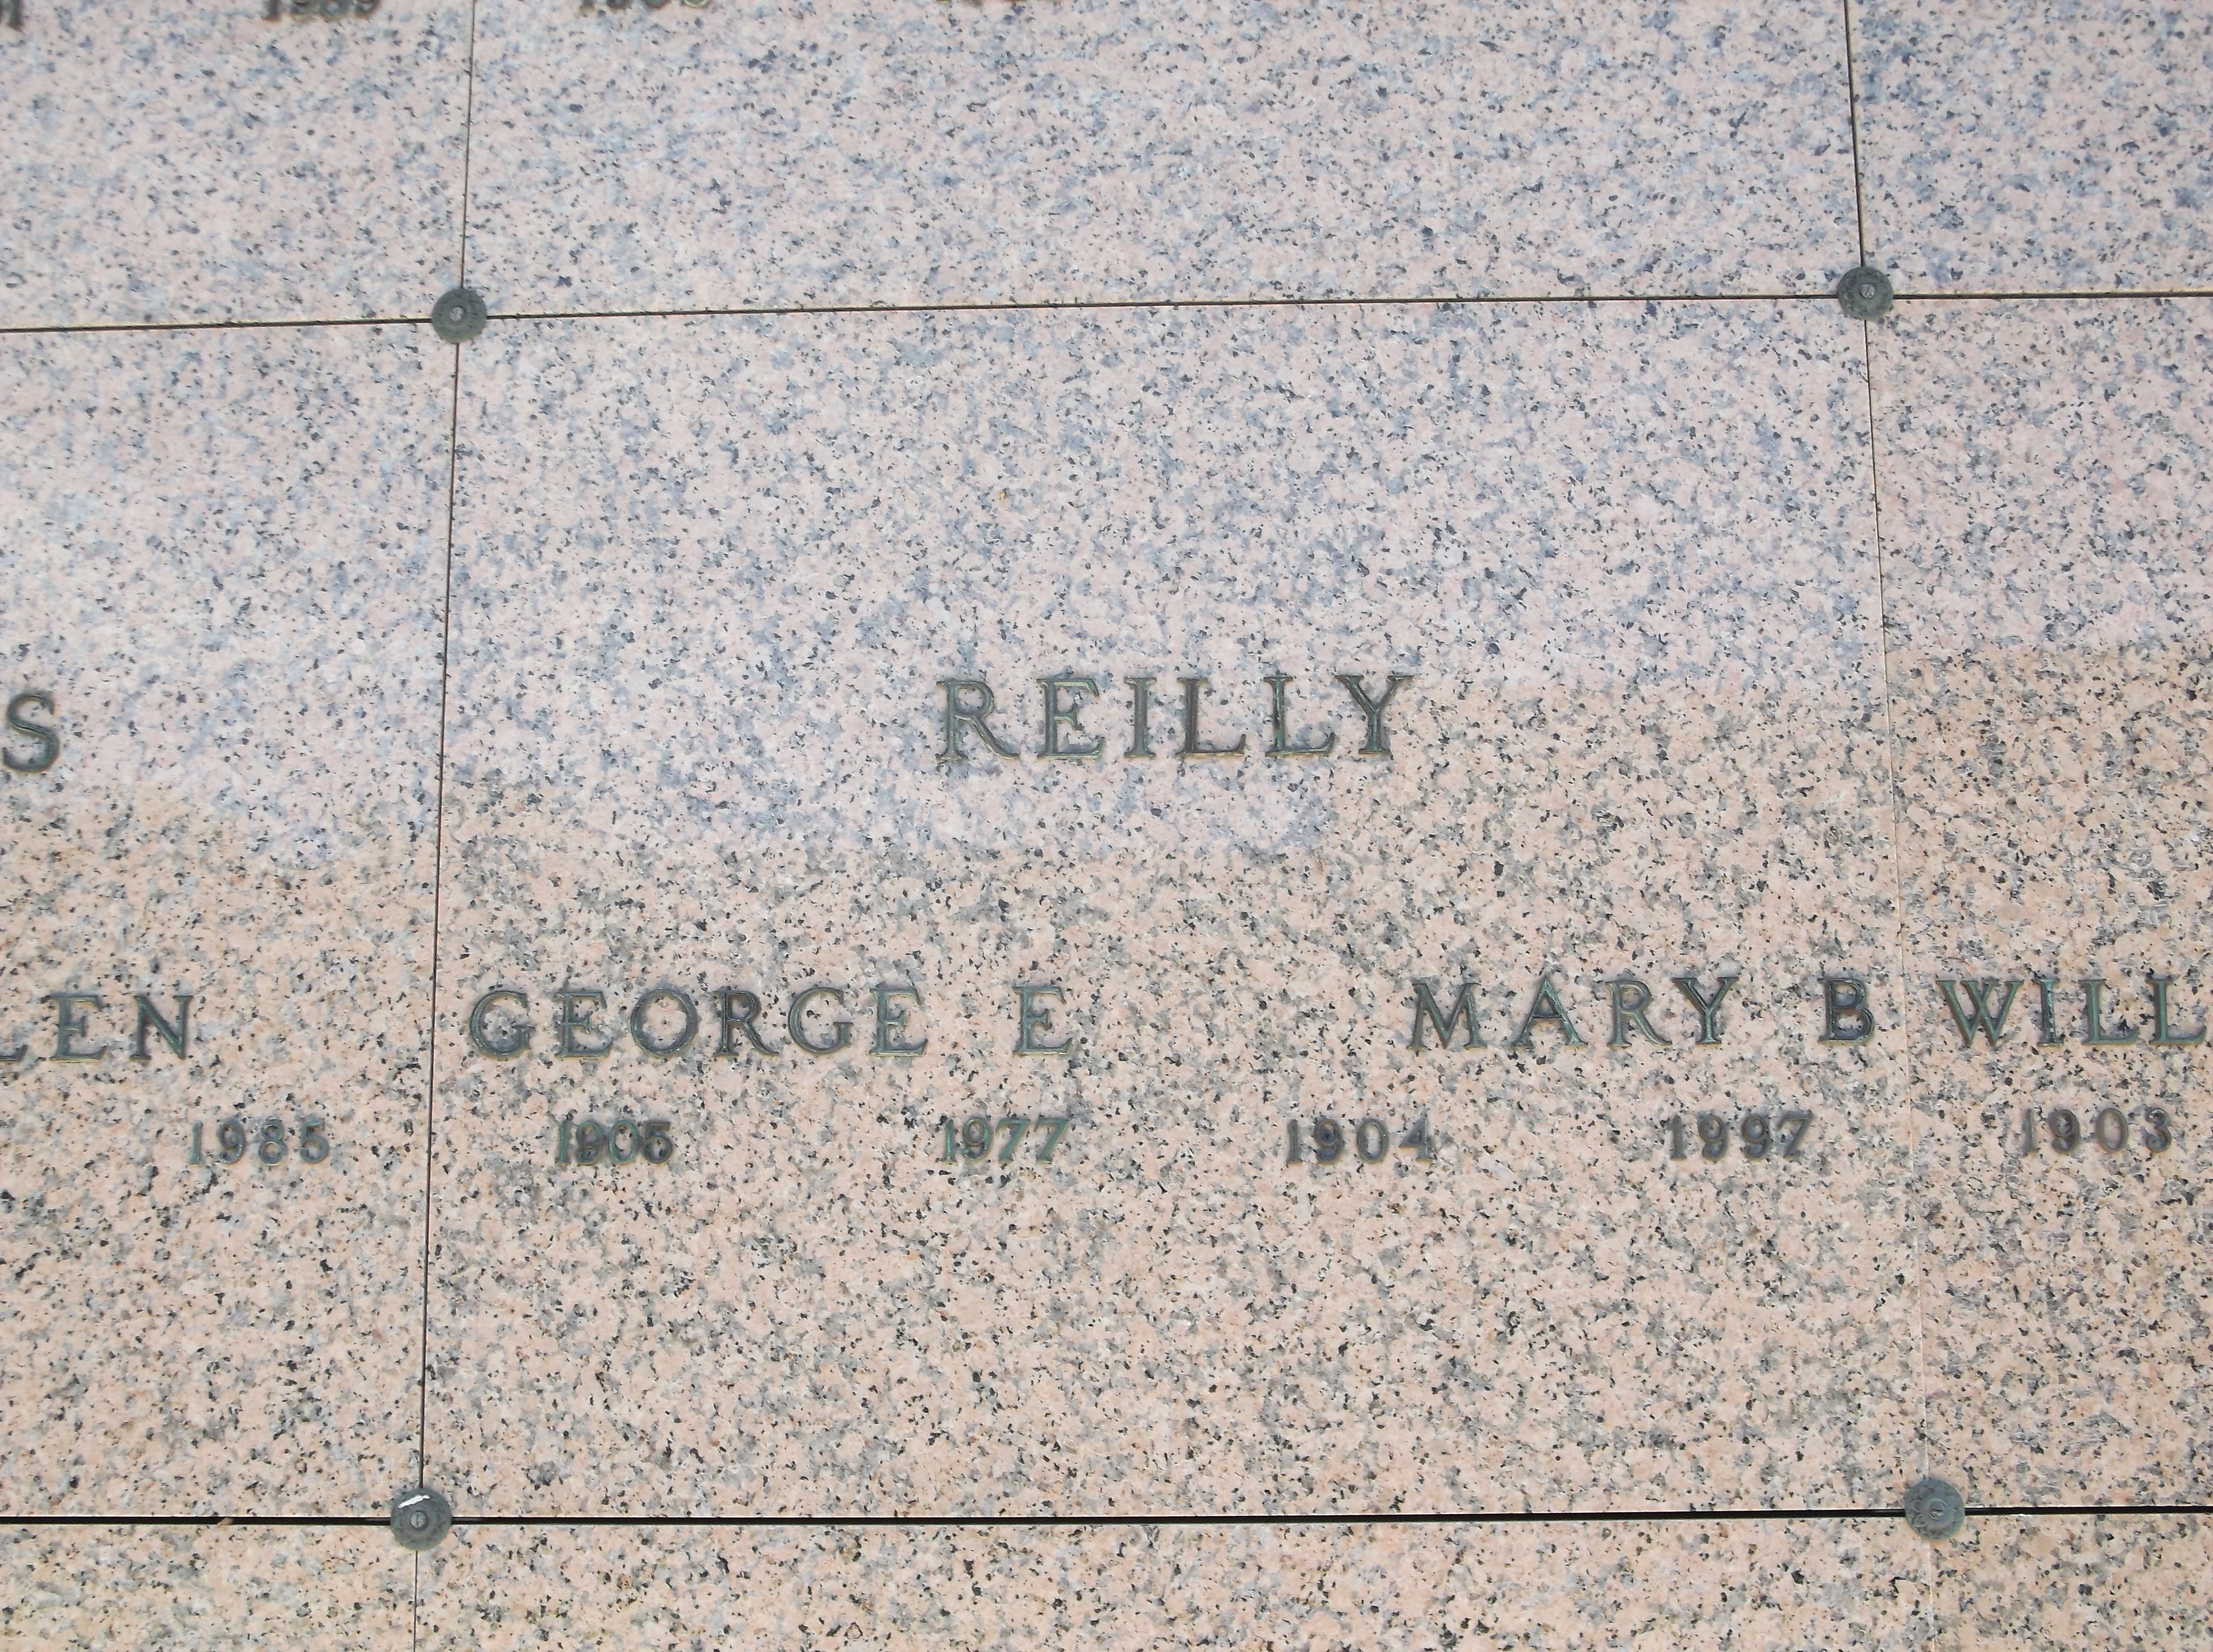 George E Reilly